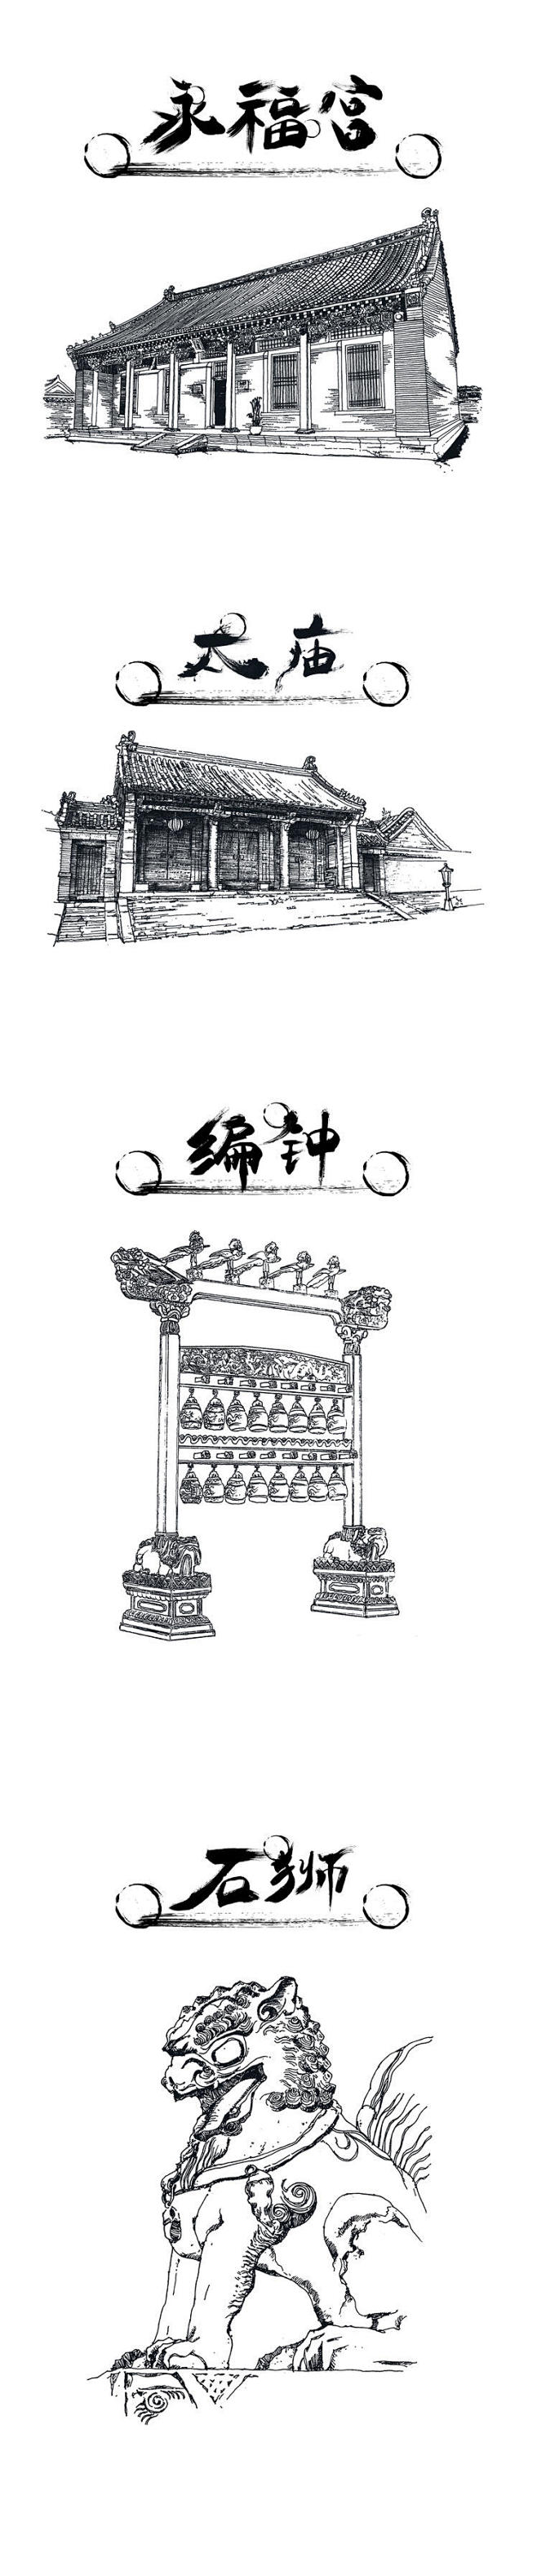 国之重器沈阳故宫手绘明信片设计ui中国